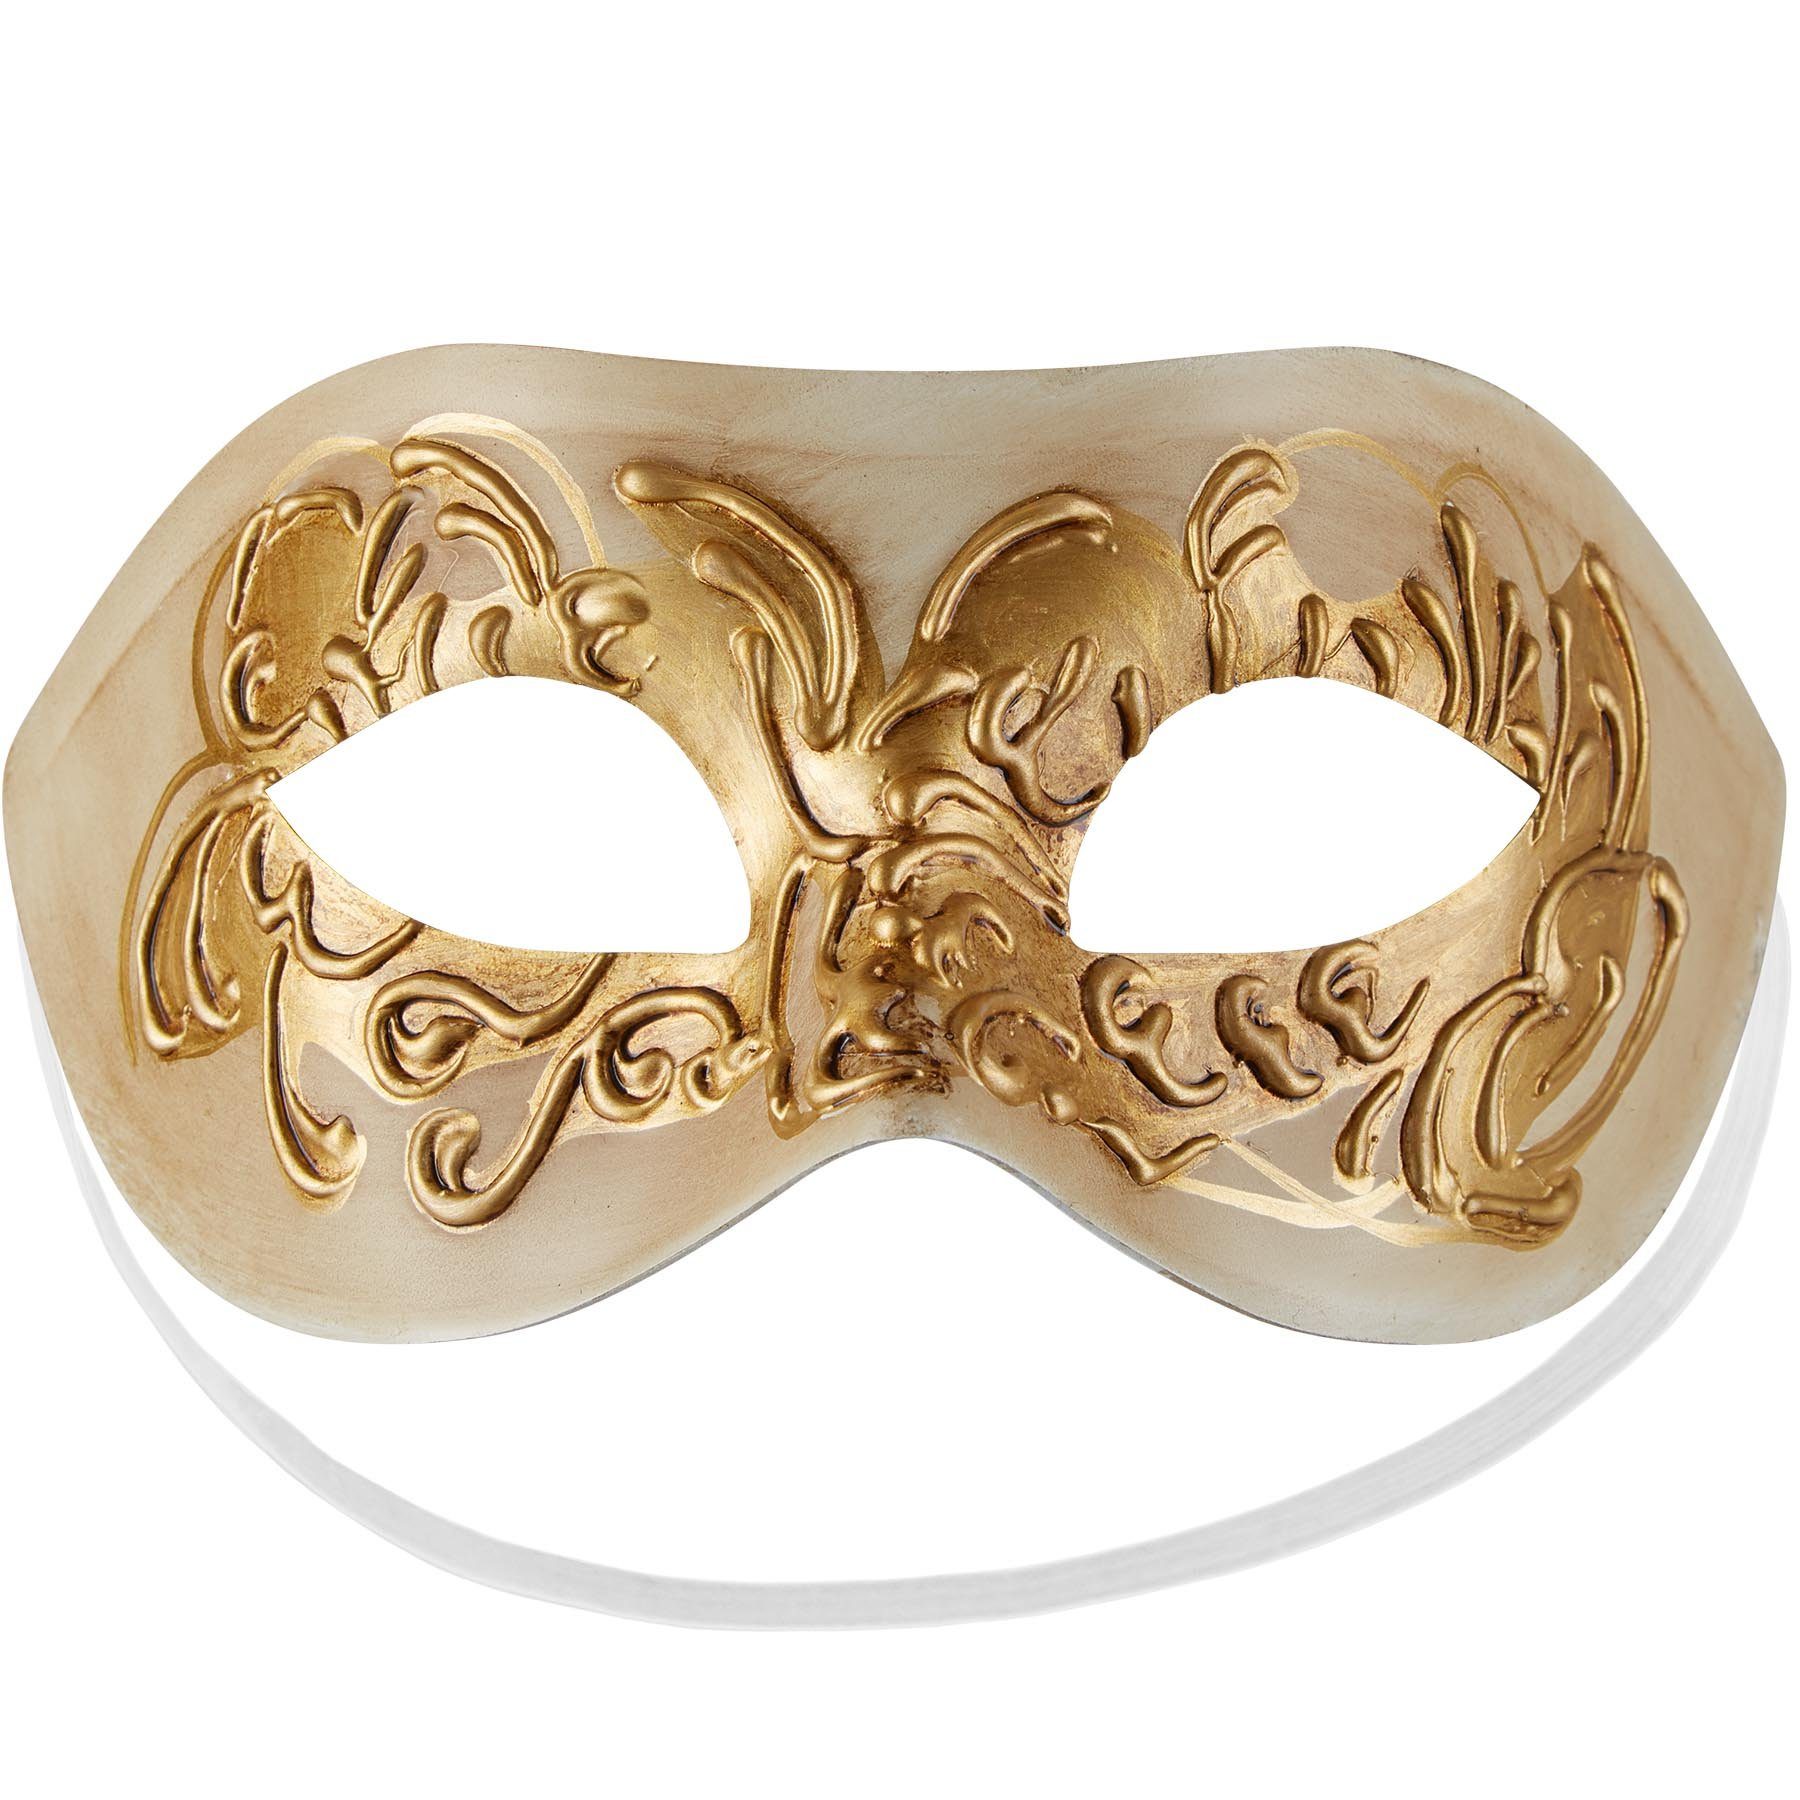 dressforfun Kostüm Venezianische Maske mit Verzierung